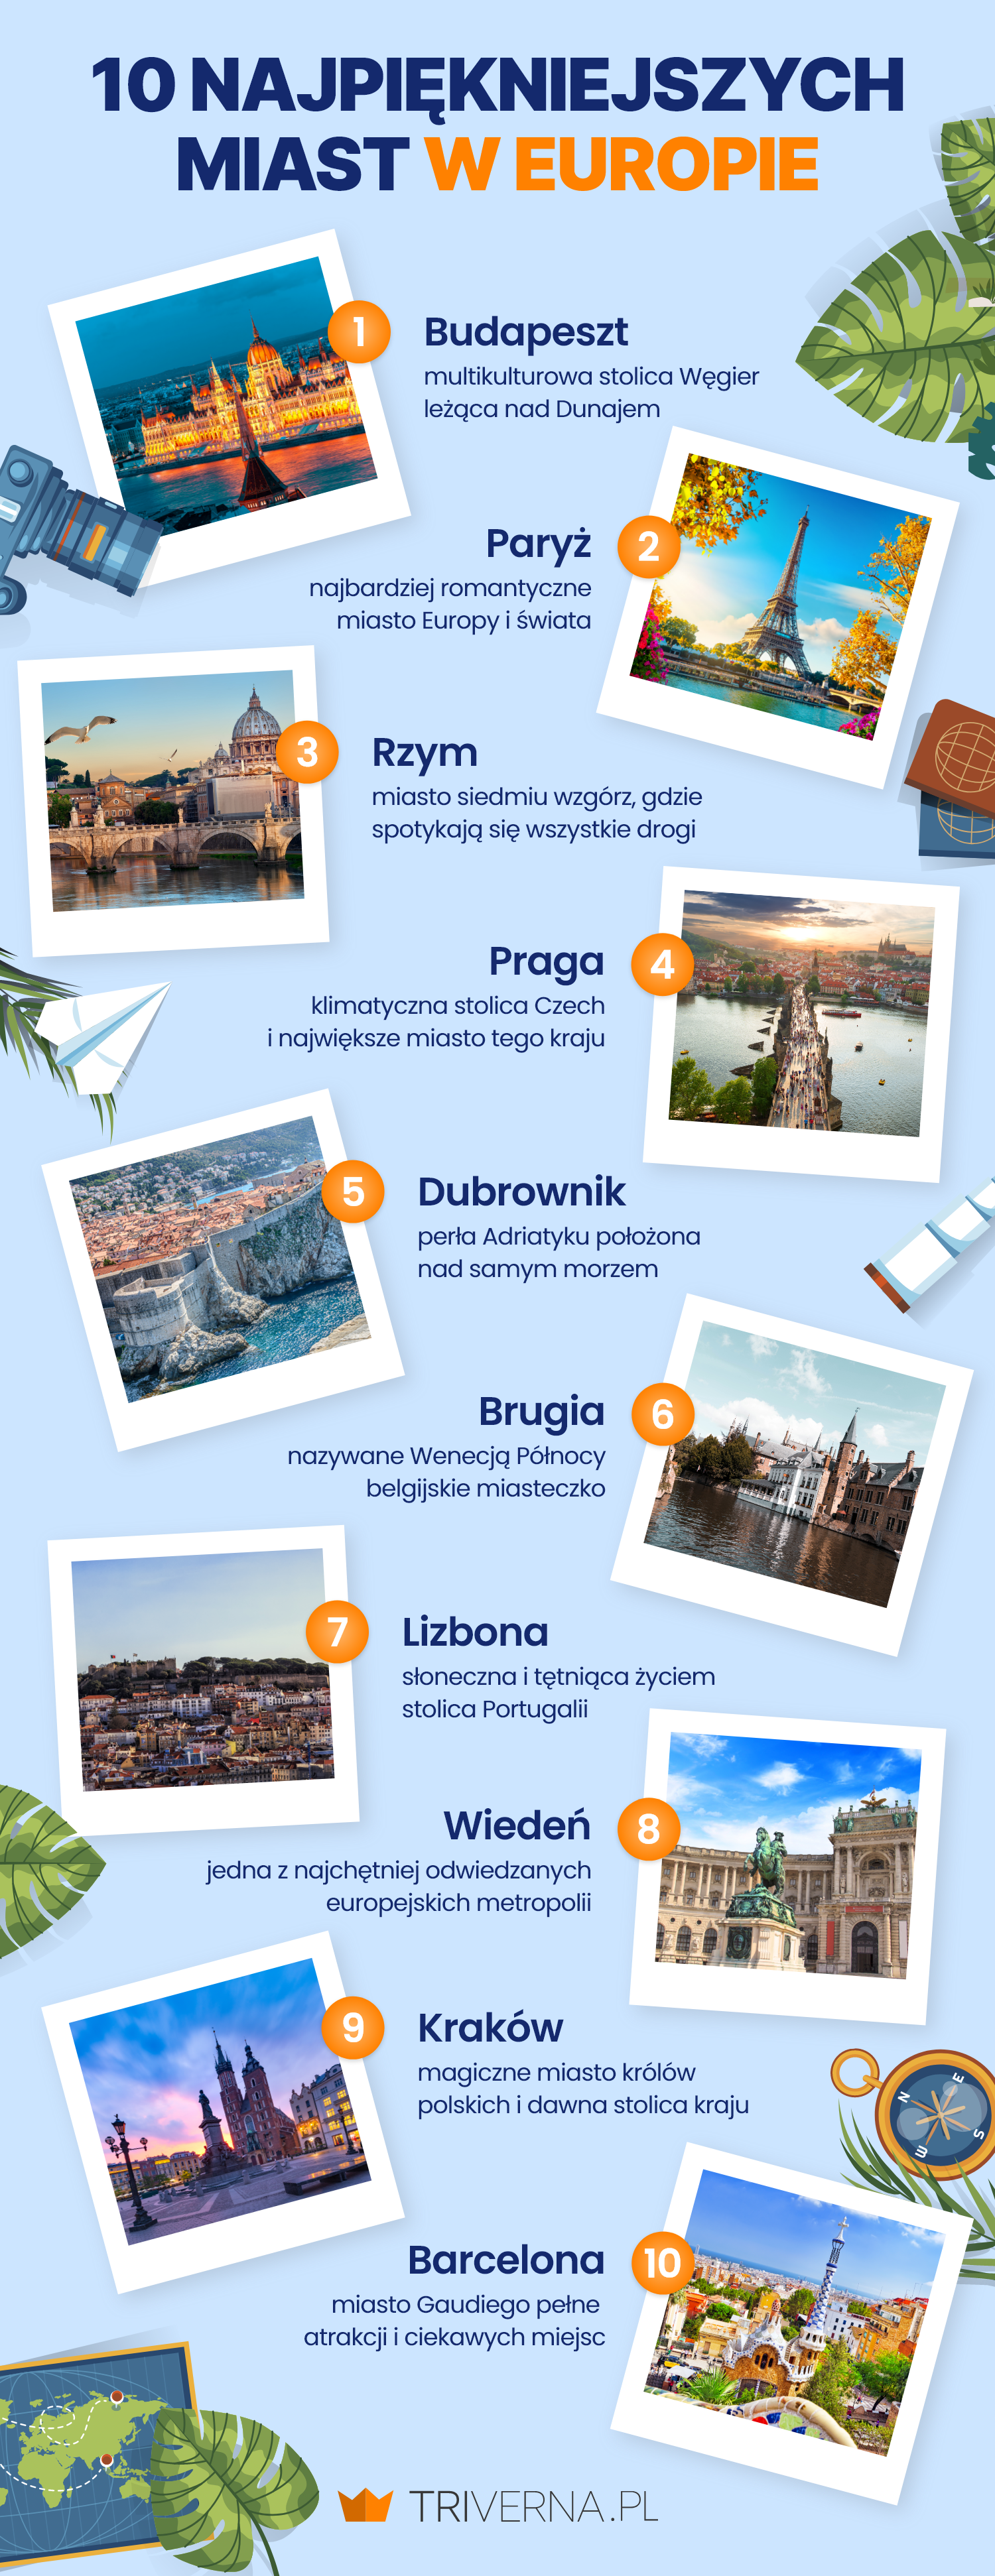 10 najpiękniejszych miast w Europie - infografika
